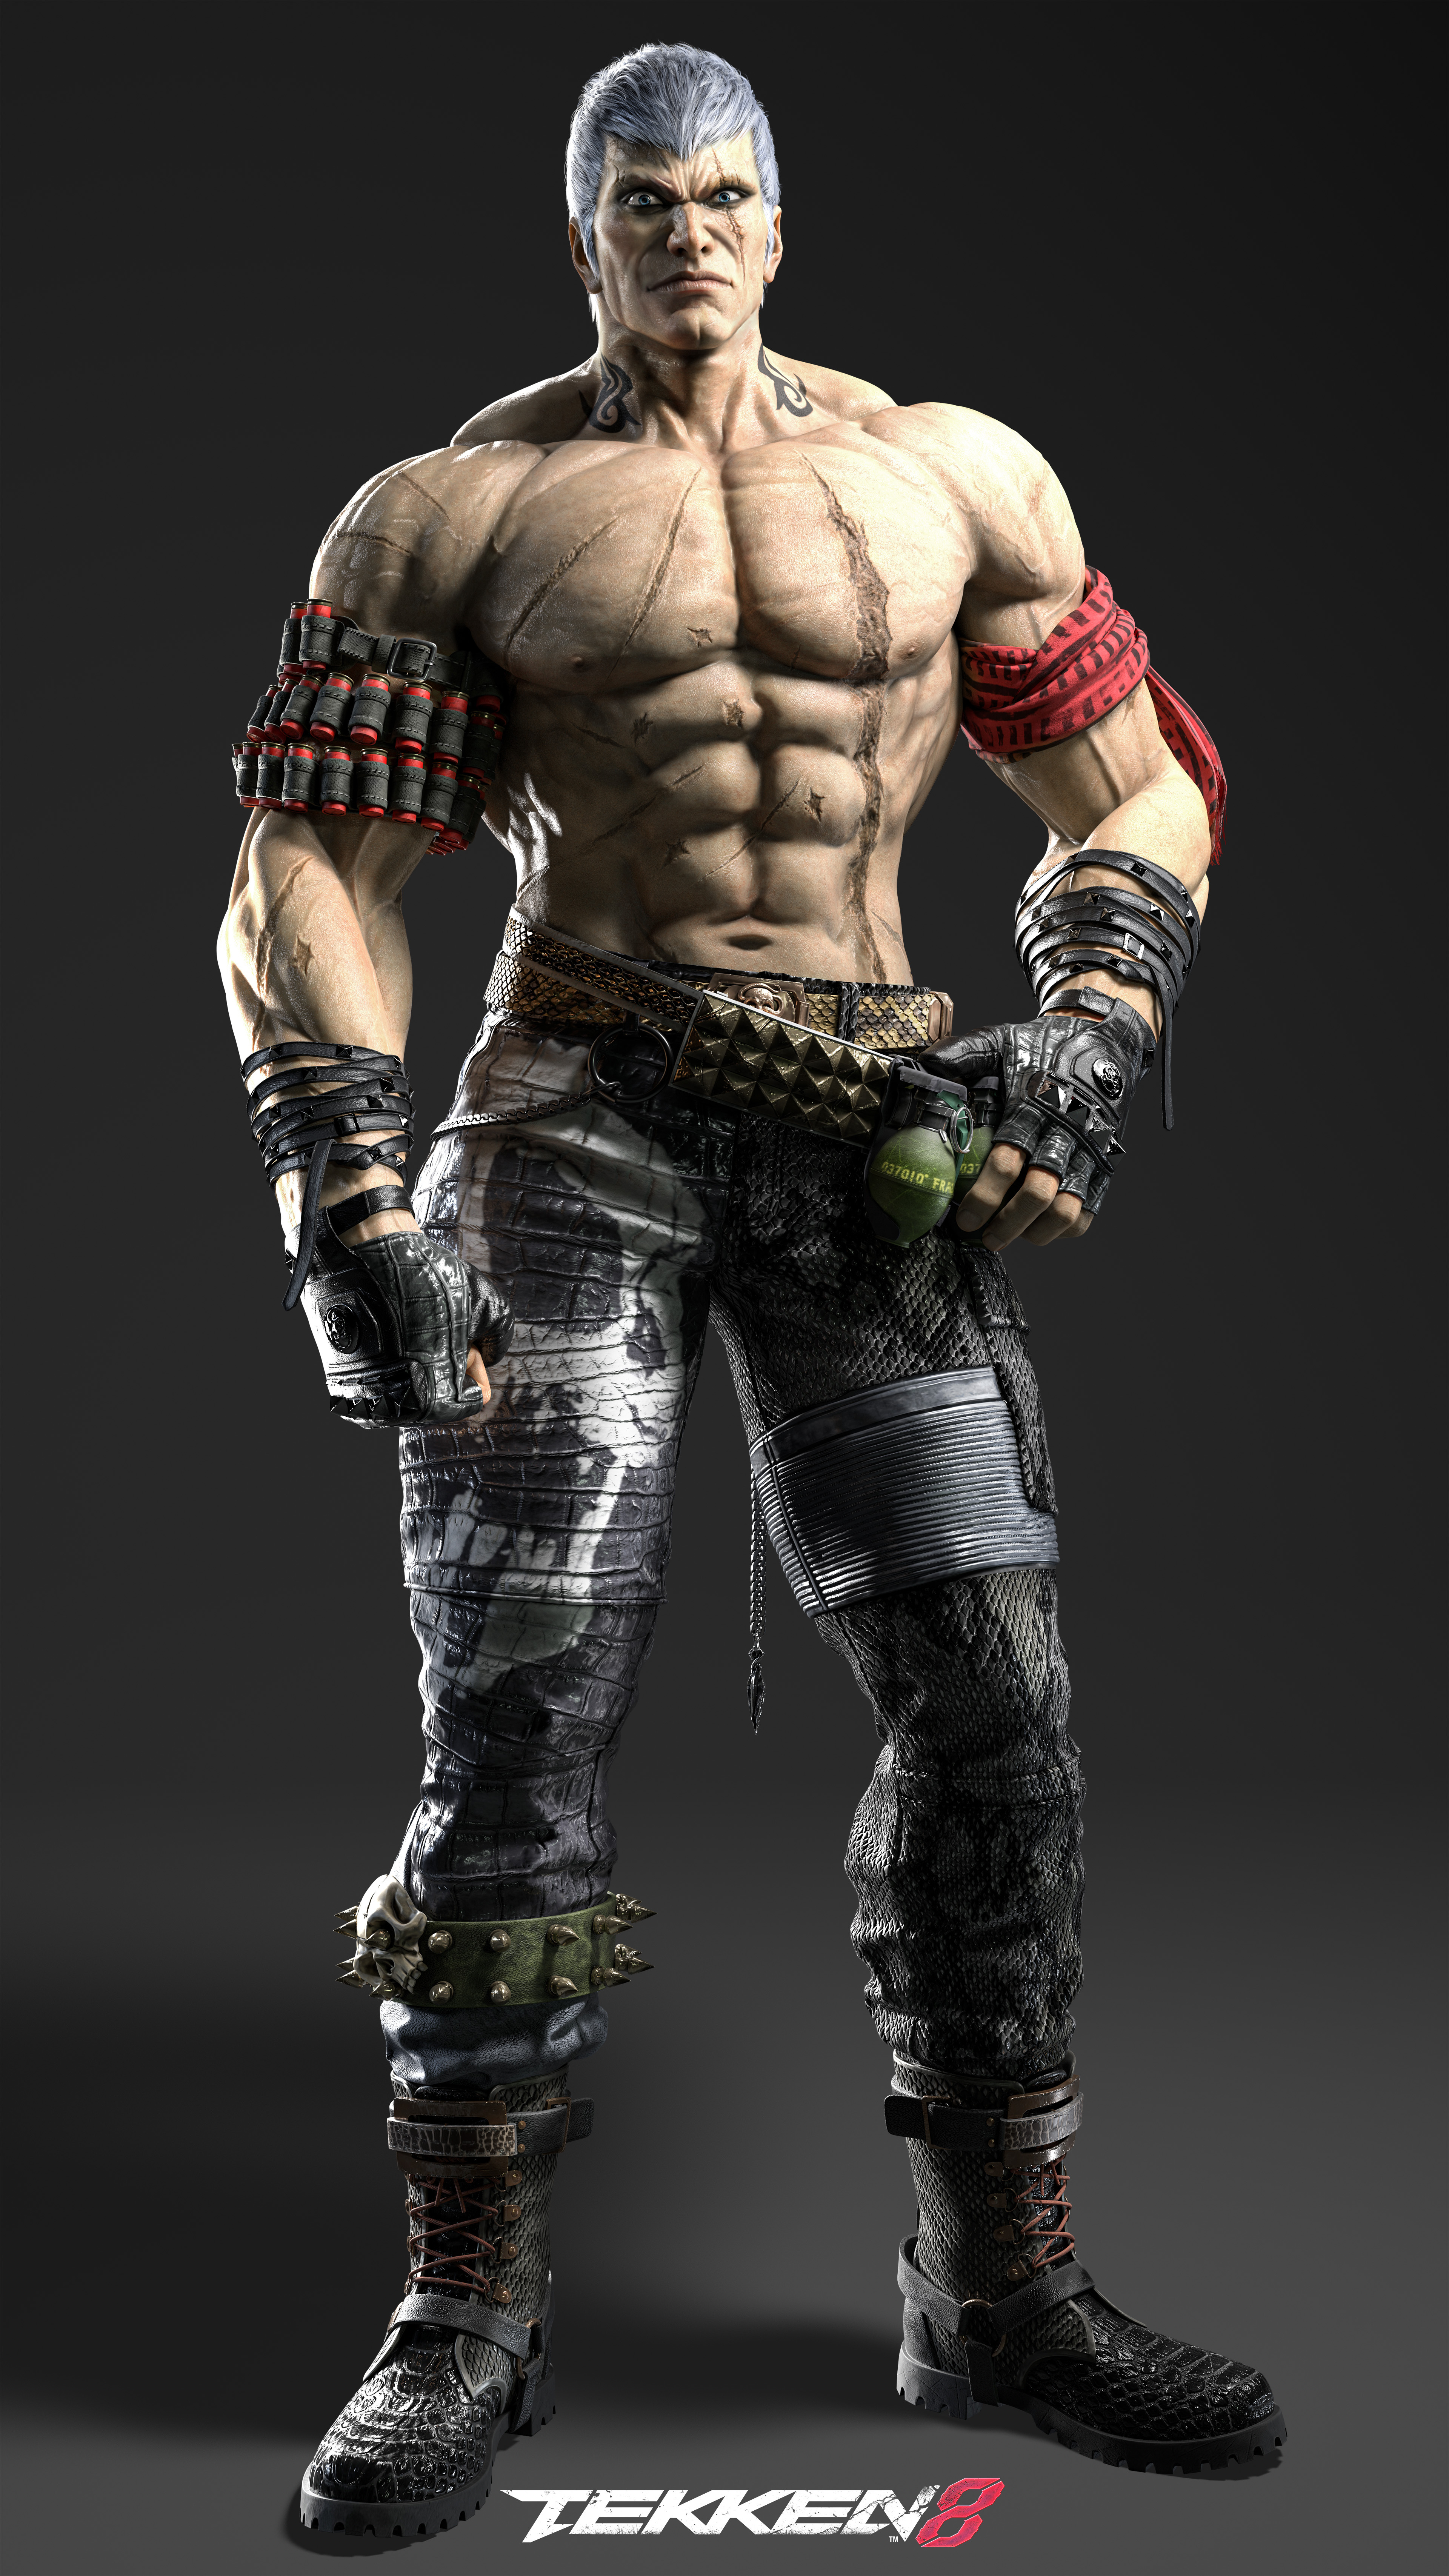 Tekken 8 tem mais um personagem confirmado: Bryan Fury